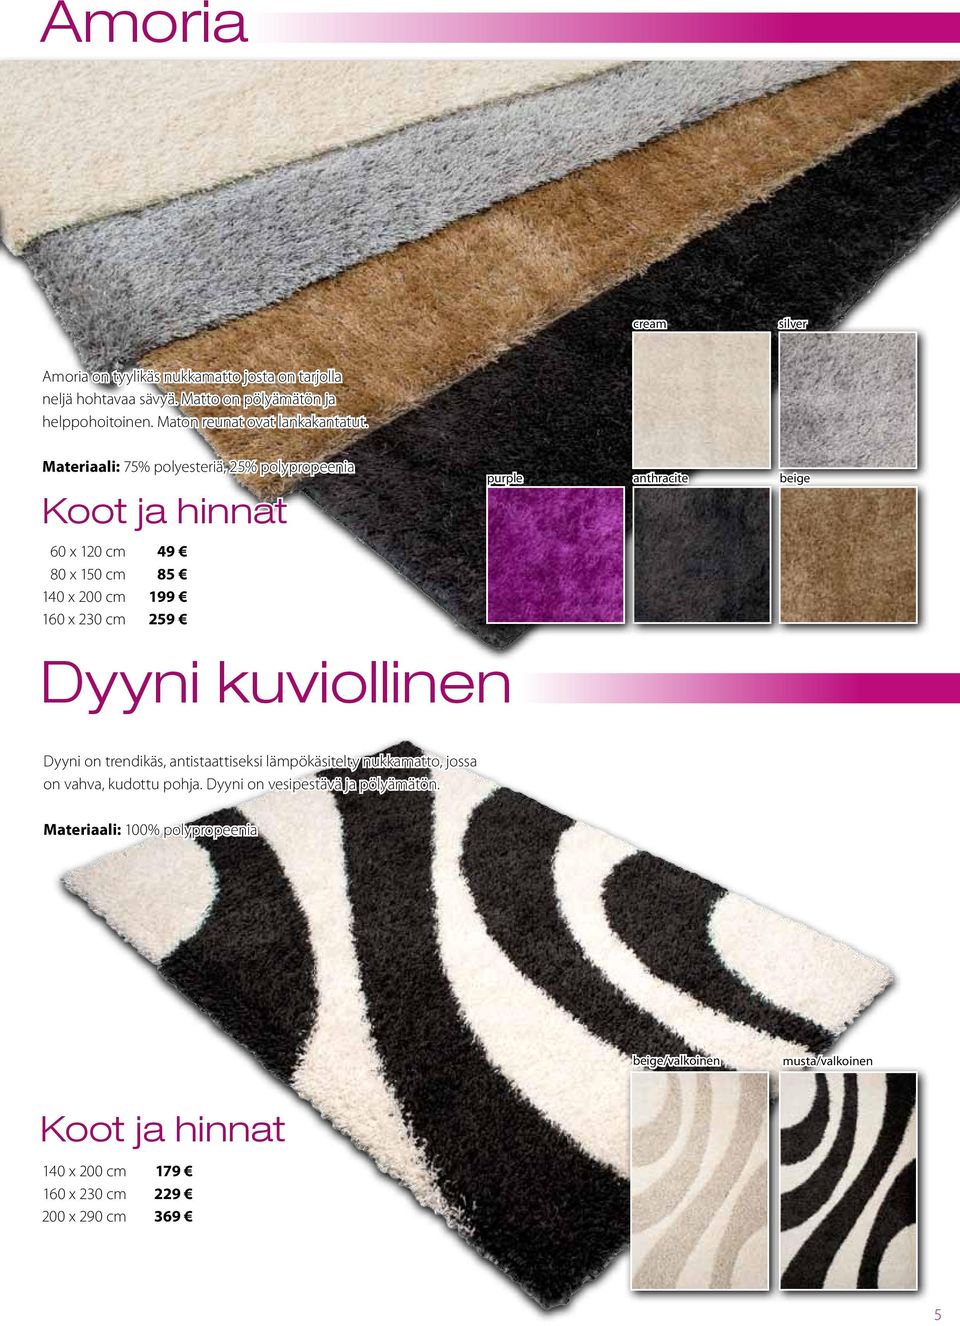 Materiaali: 75% polyesteriä, 25% polypropeenia purple anthracite beige 60 x 120 cm 49 85 199 259 Dyyni kuviollinen